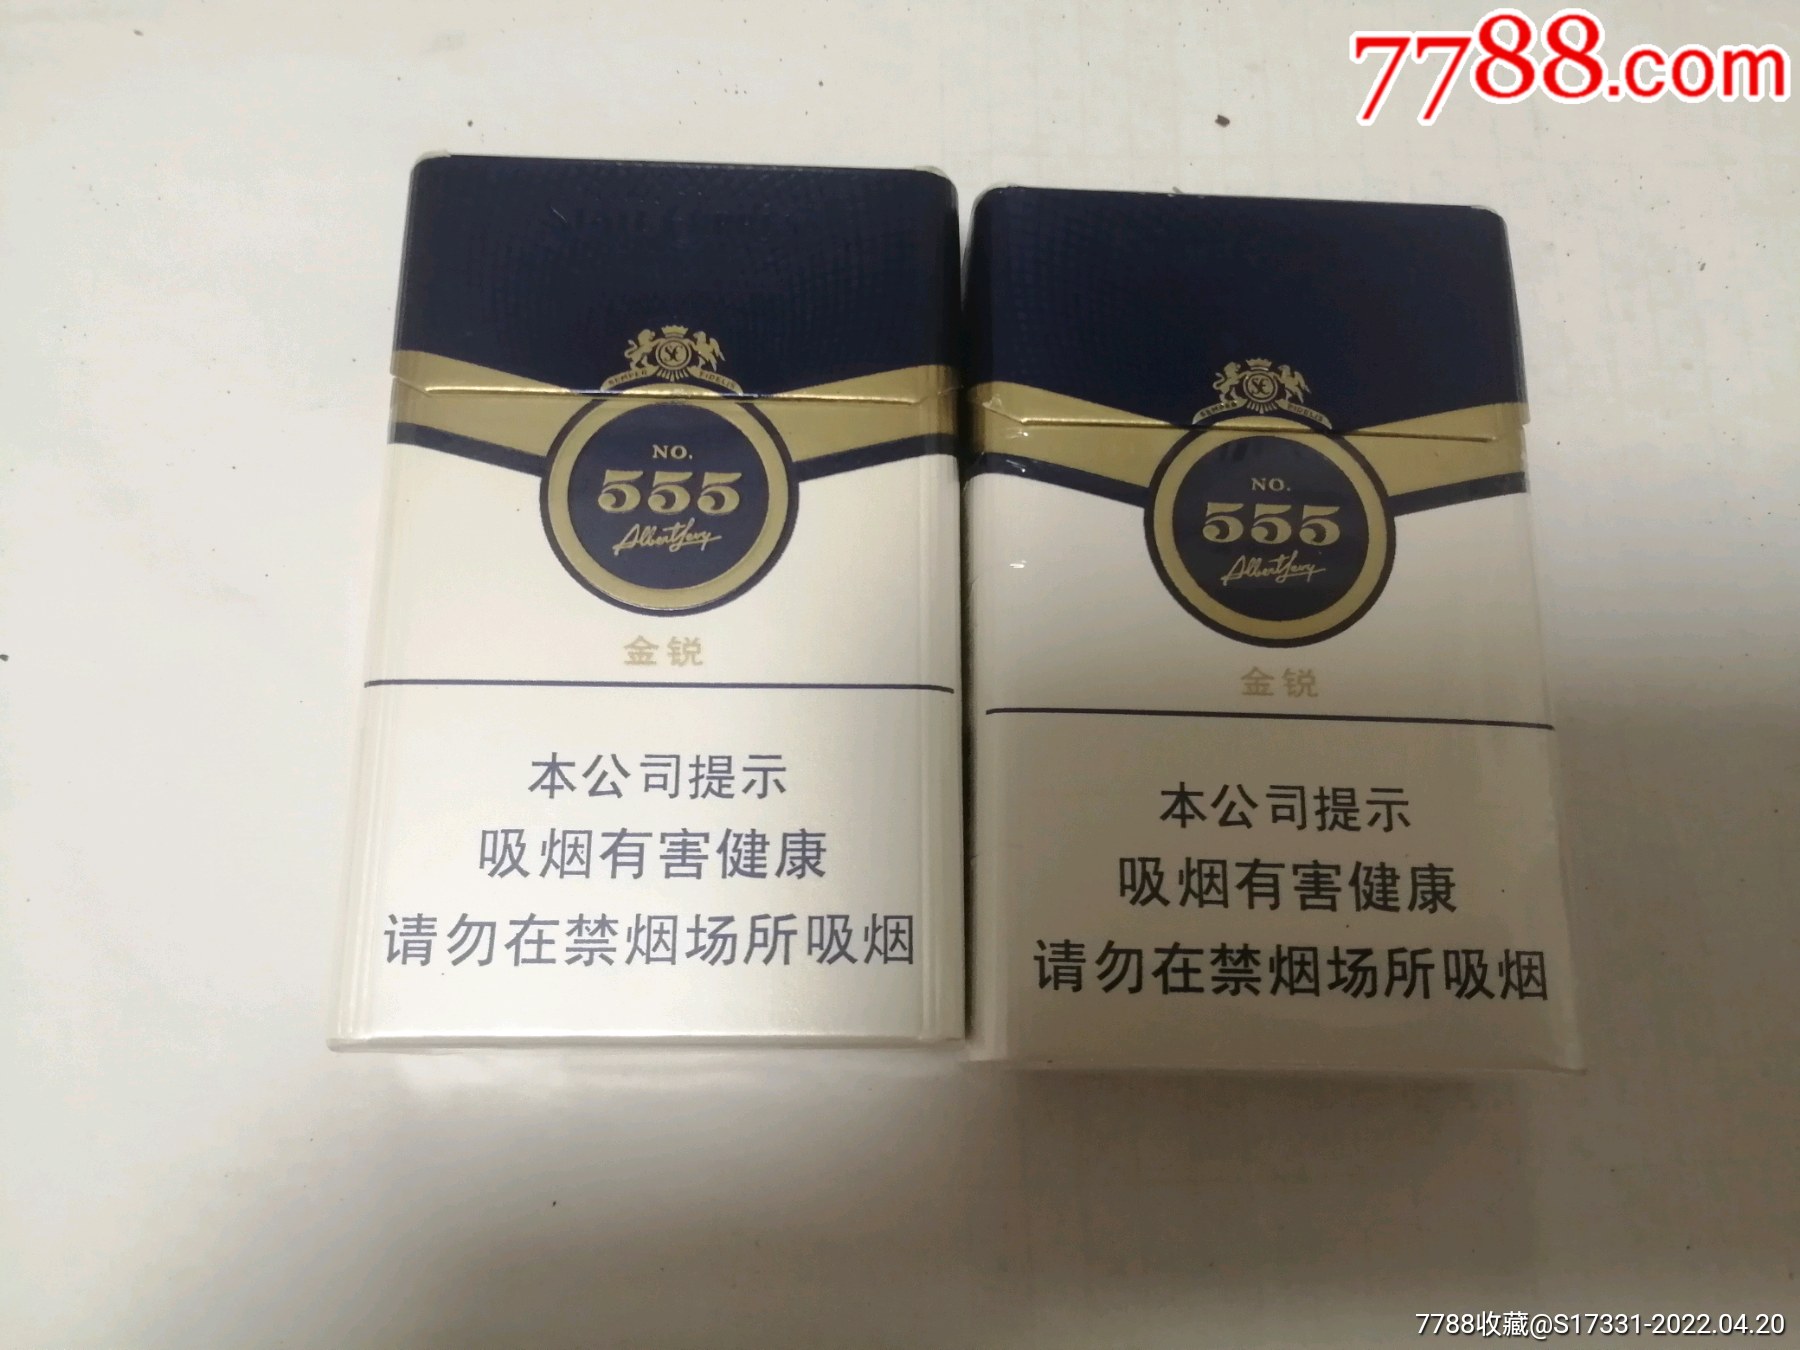 555香烟扁盒图片